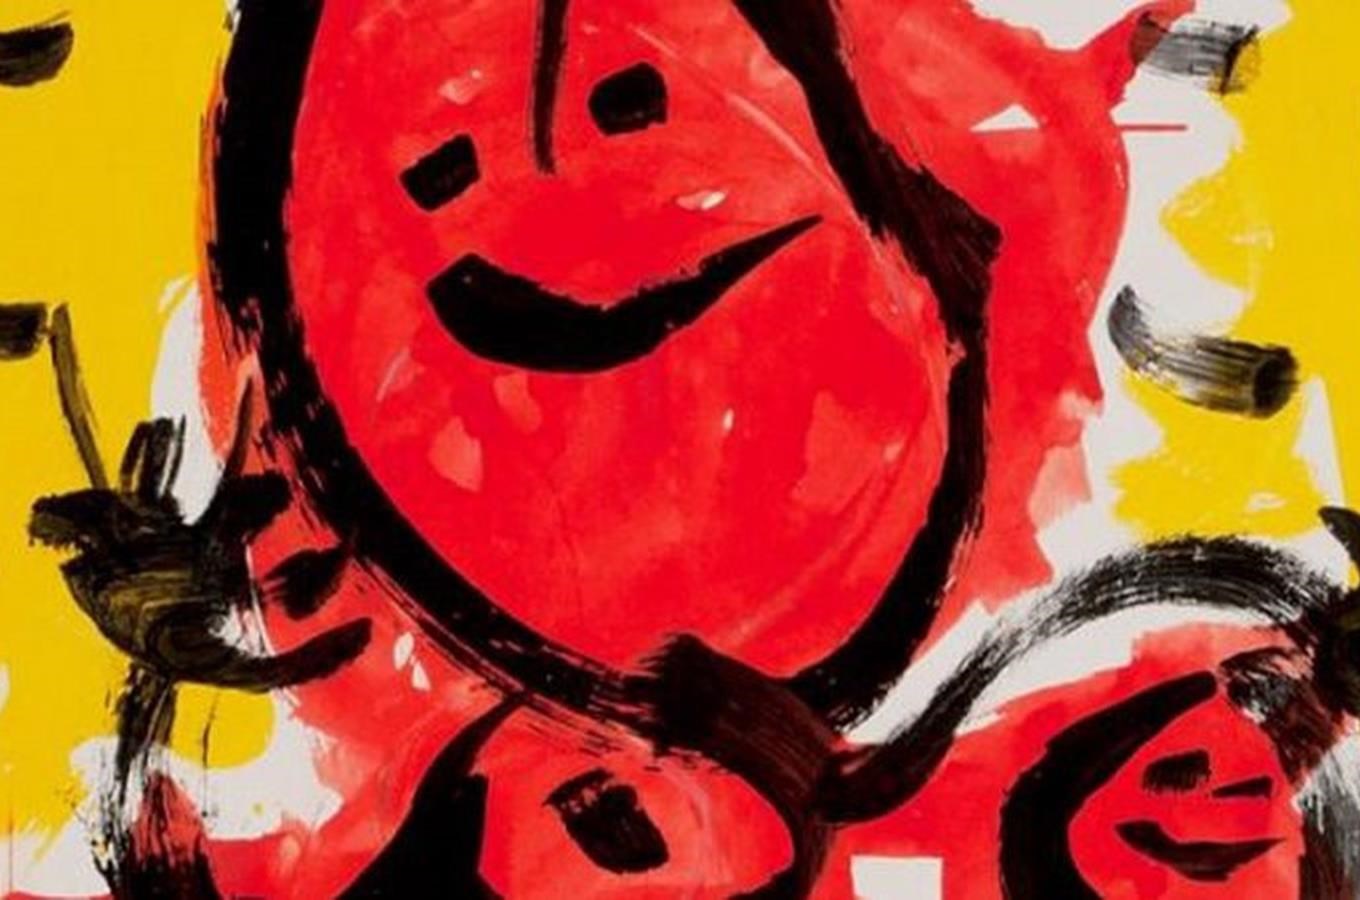 Národní galerie prodlužuje výstavu Jana Krížka